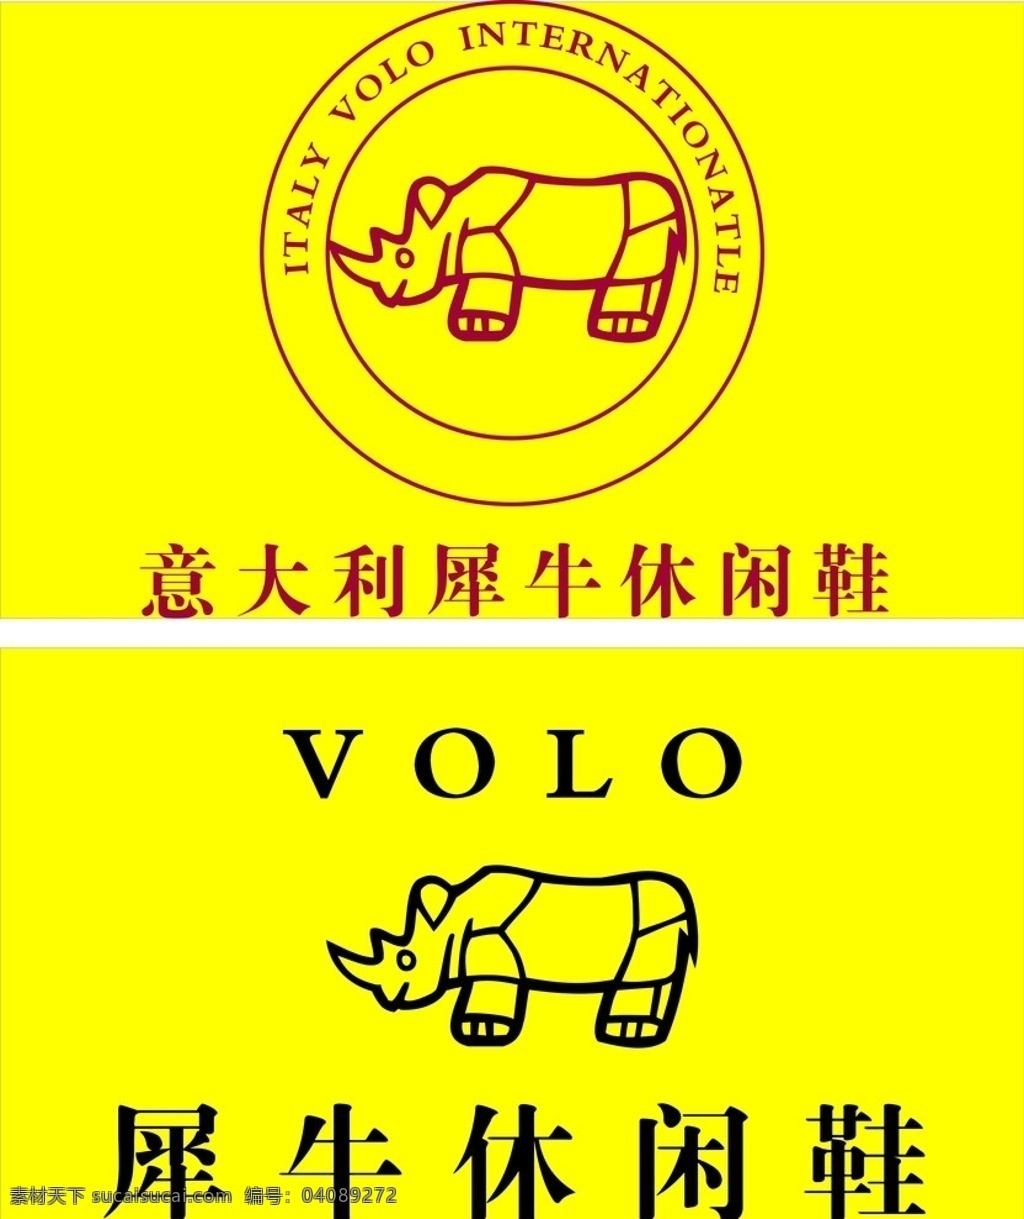 休闲鞋 标志 犀牛 企业 logo 标识标志图标 矢量